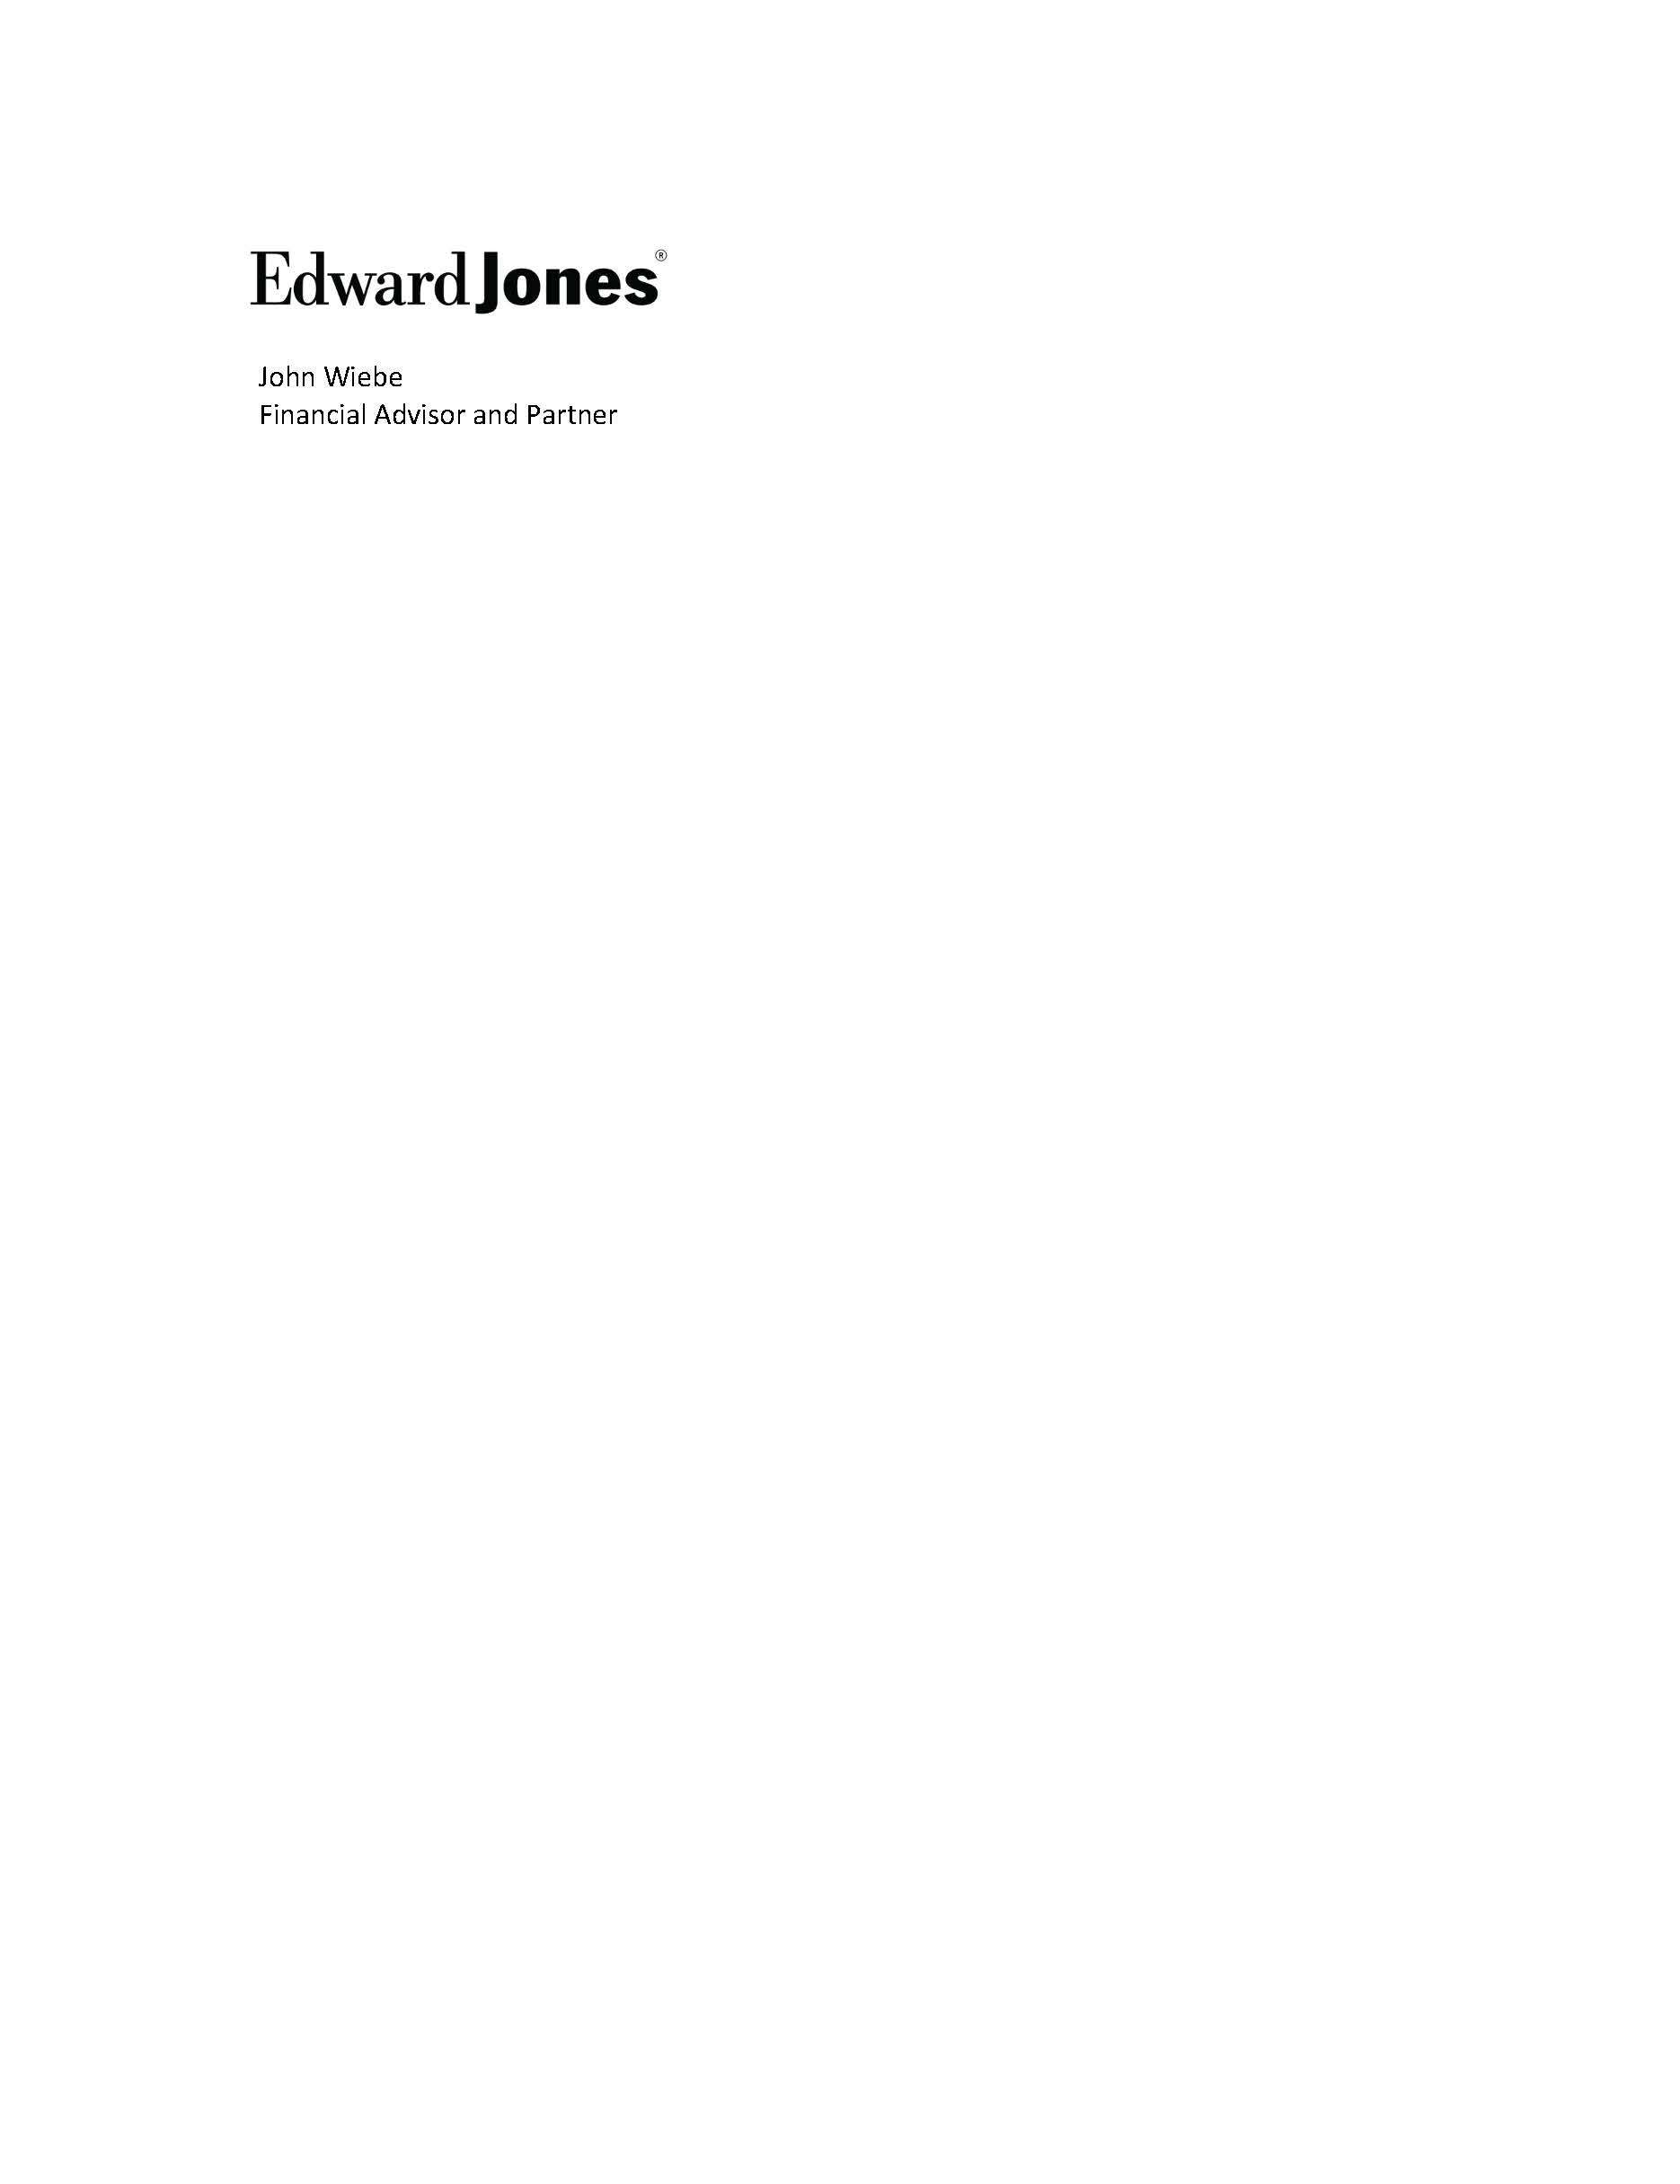 Edward Jones Financial - John Wiebe